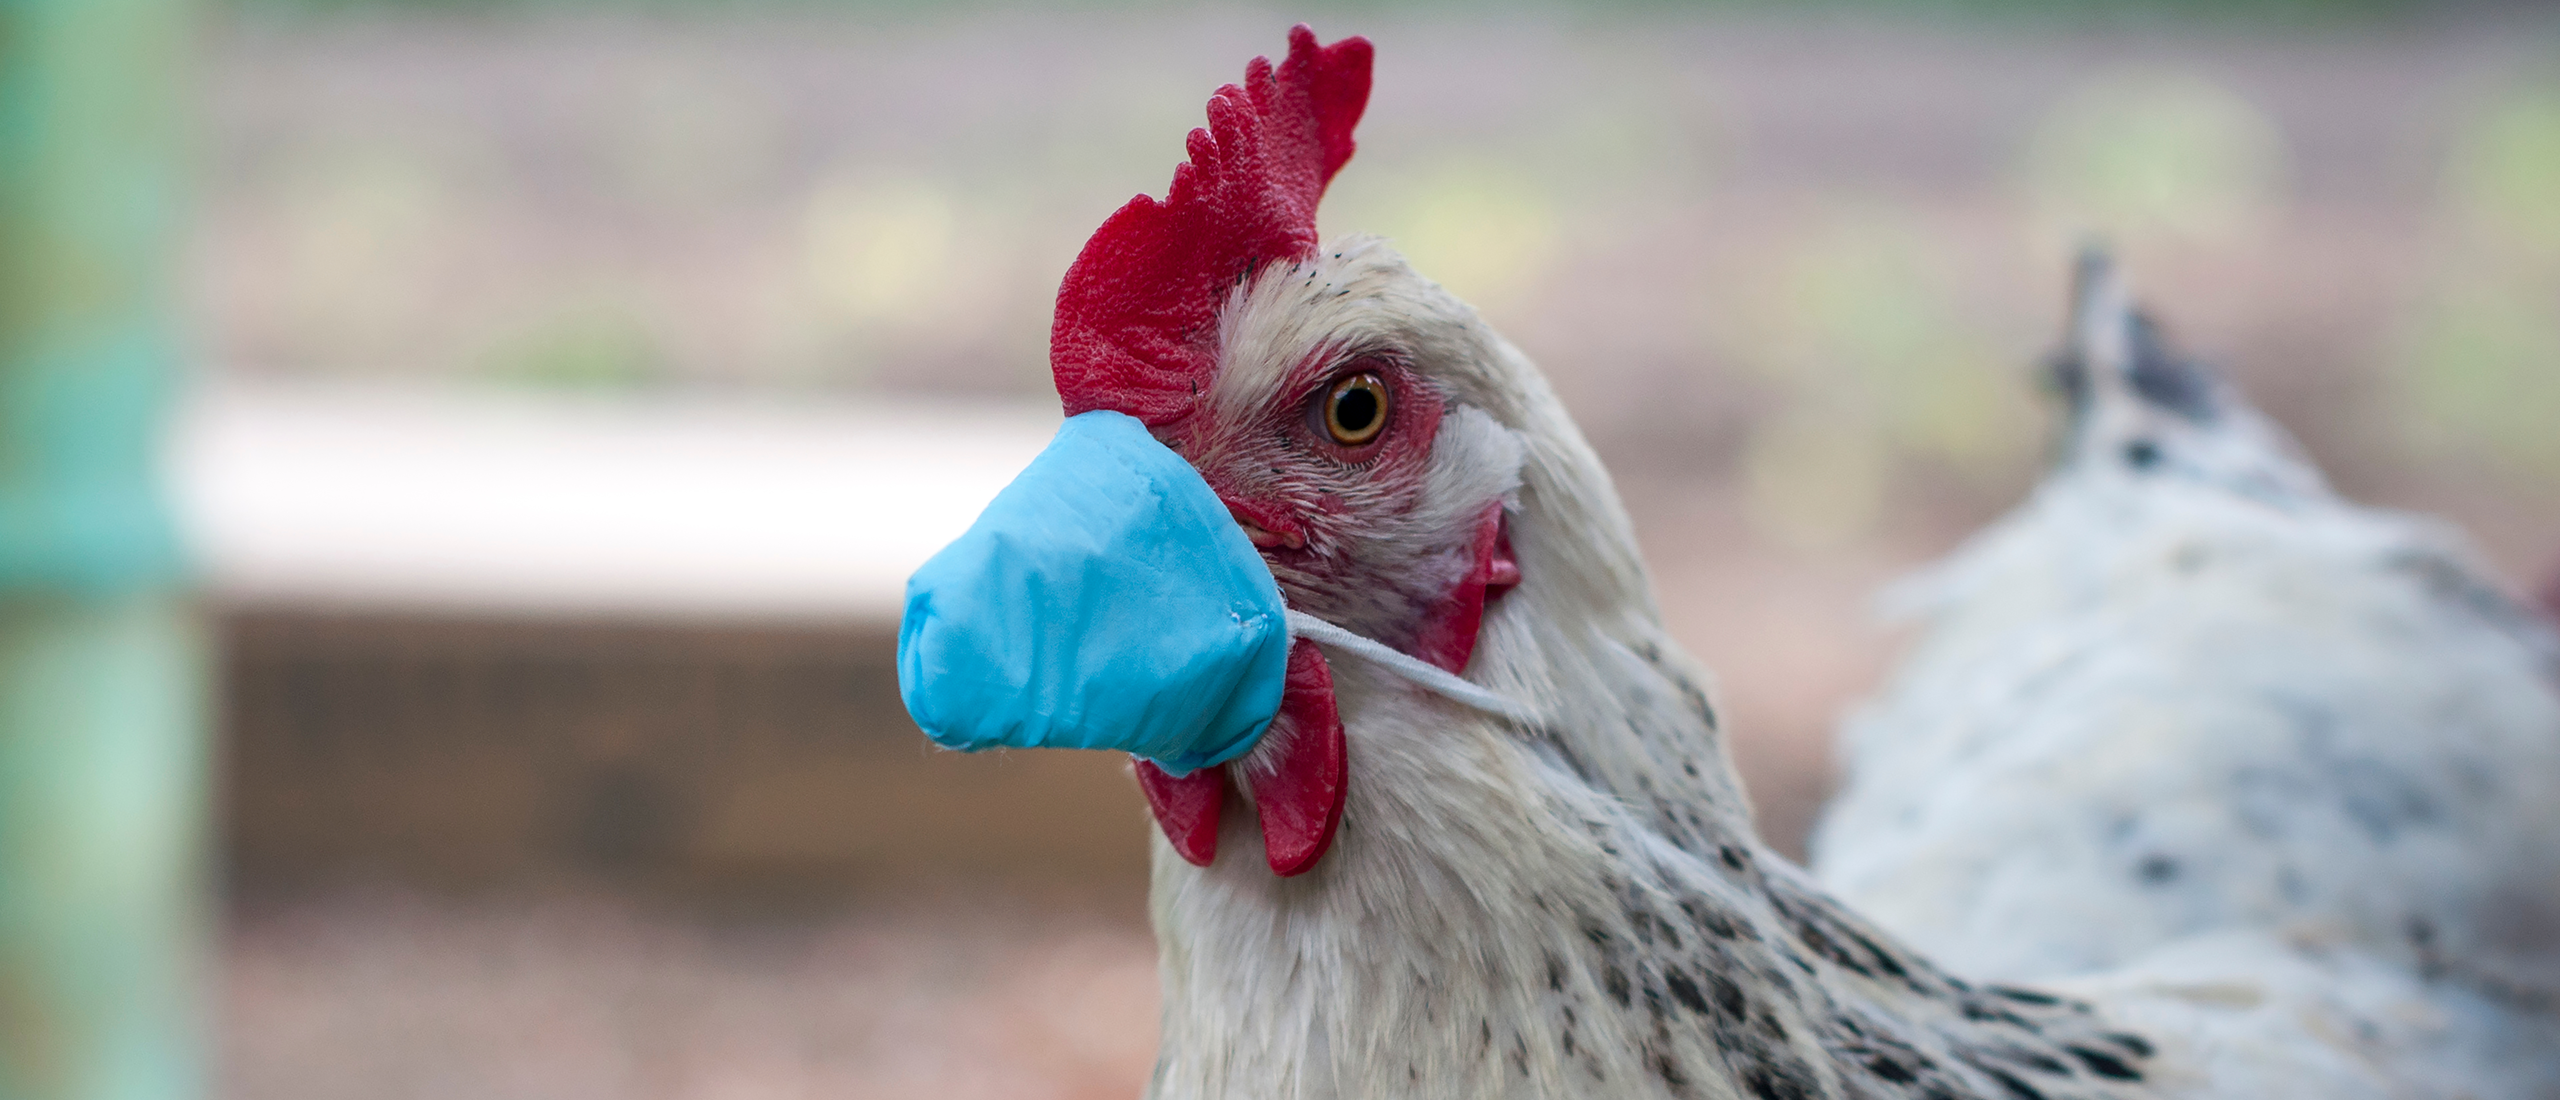 Hoe herken je de vogelgriep bij kippen?